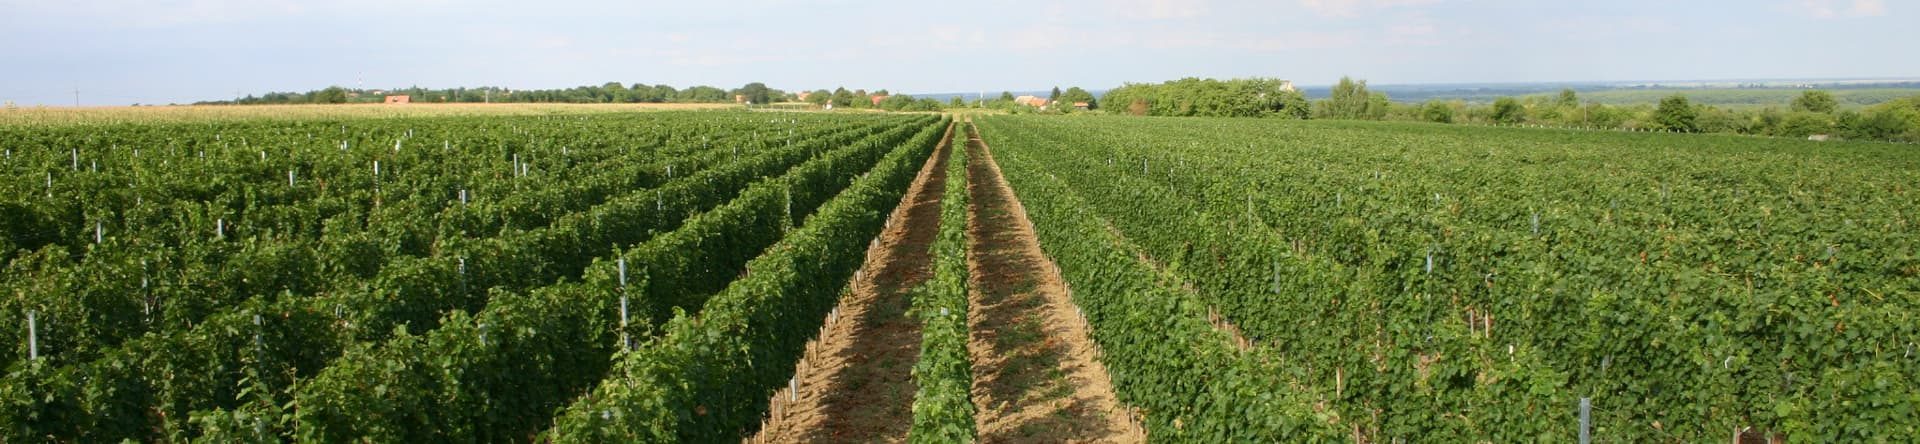 Vinogradi eko vinarije Kalazić